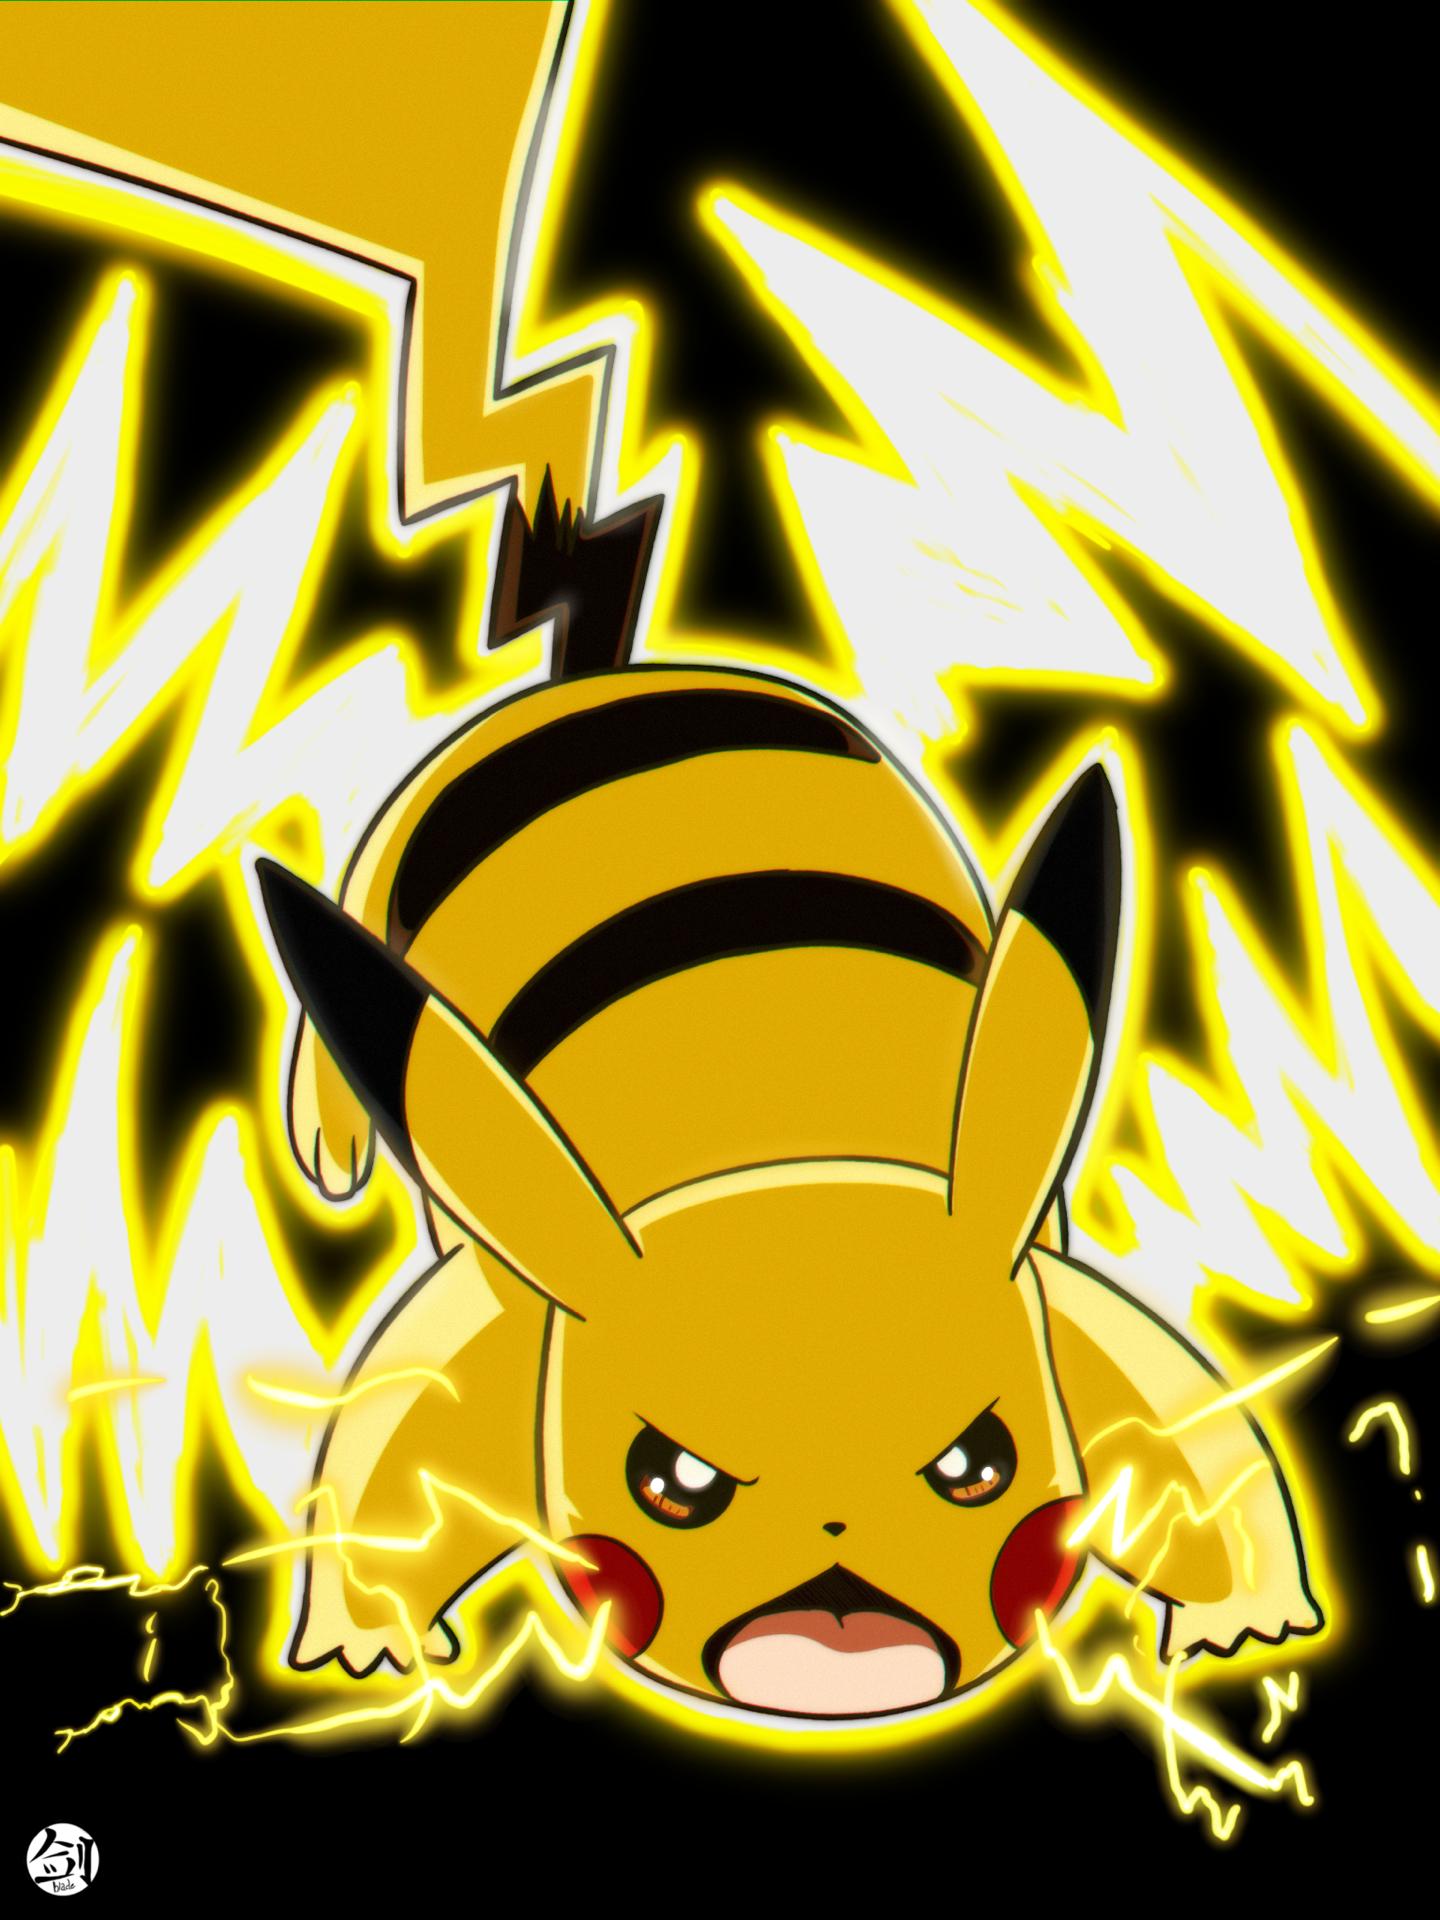 Pikachu Thunderbolt by Blade3006 on DeviantArt